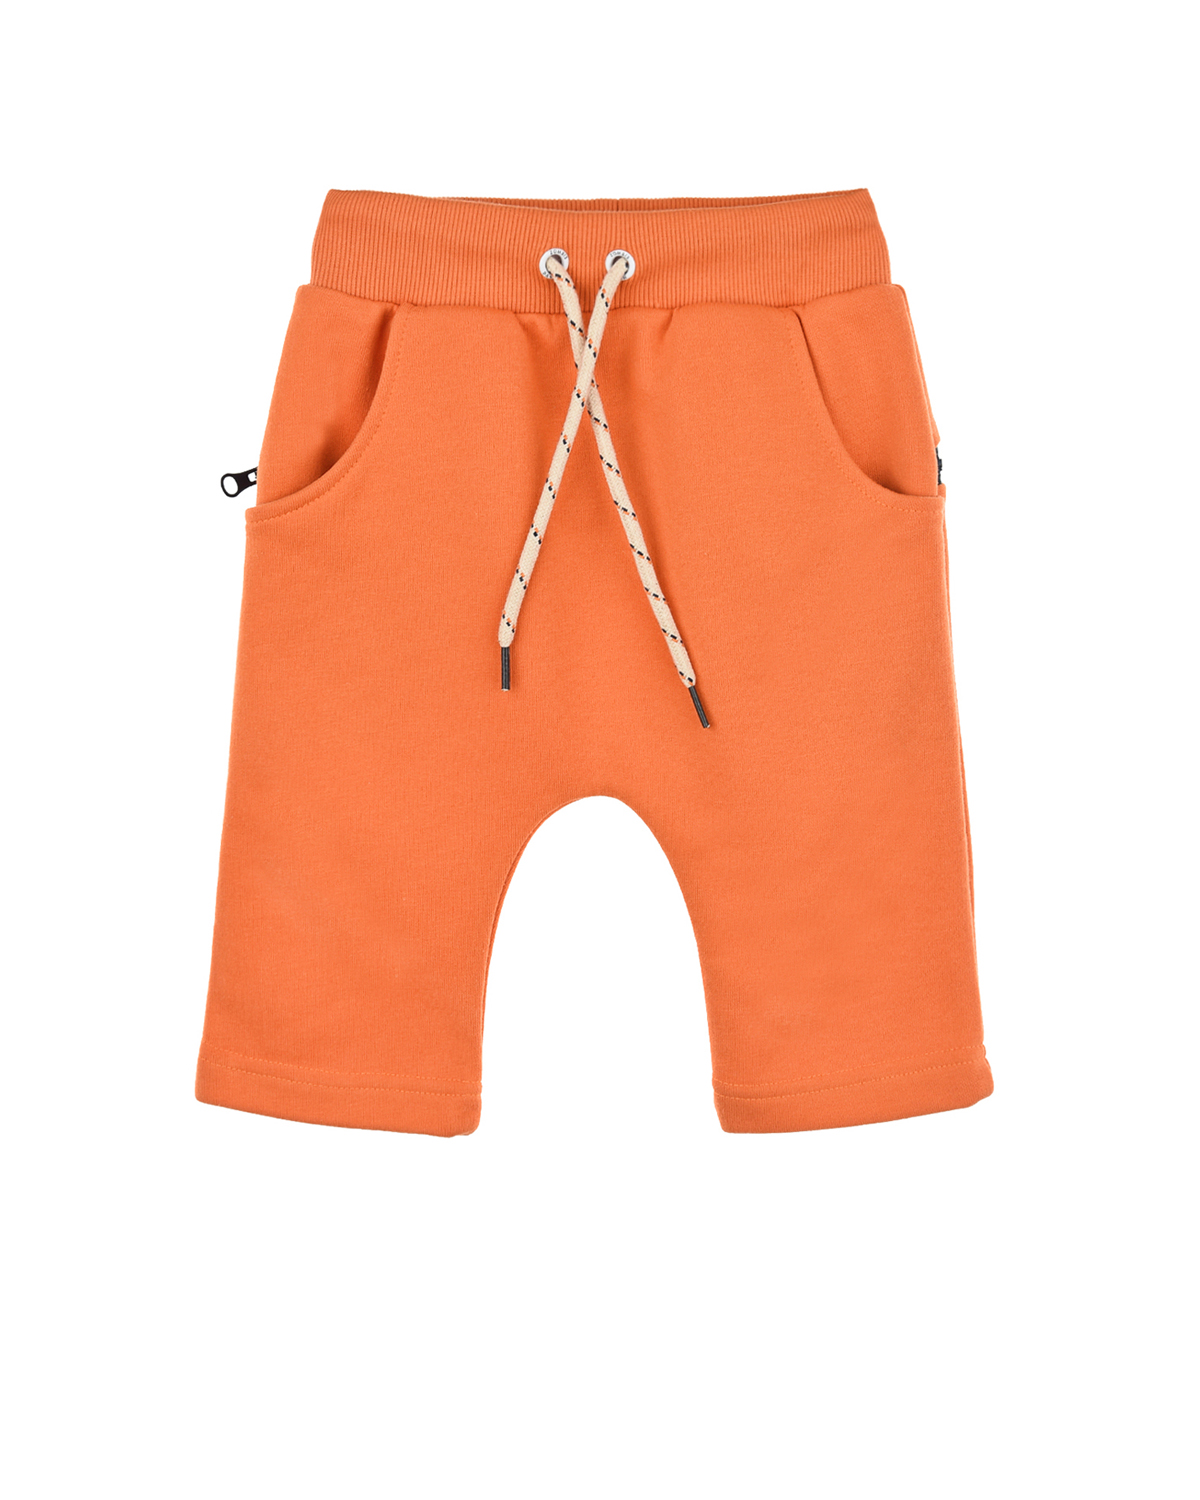 Оранжевые трикотажные шорты Zombie Dash детские, размер 92, цвет оранжевый - фото 1